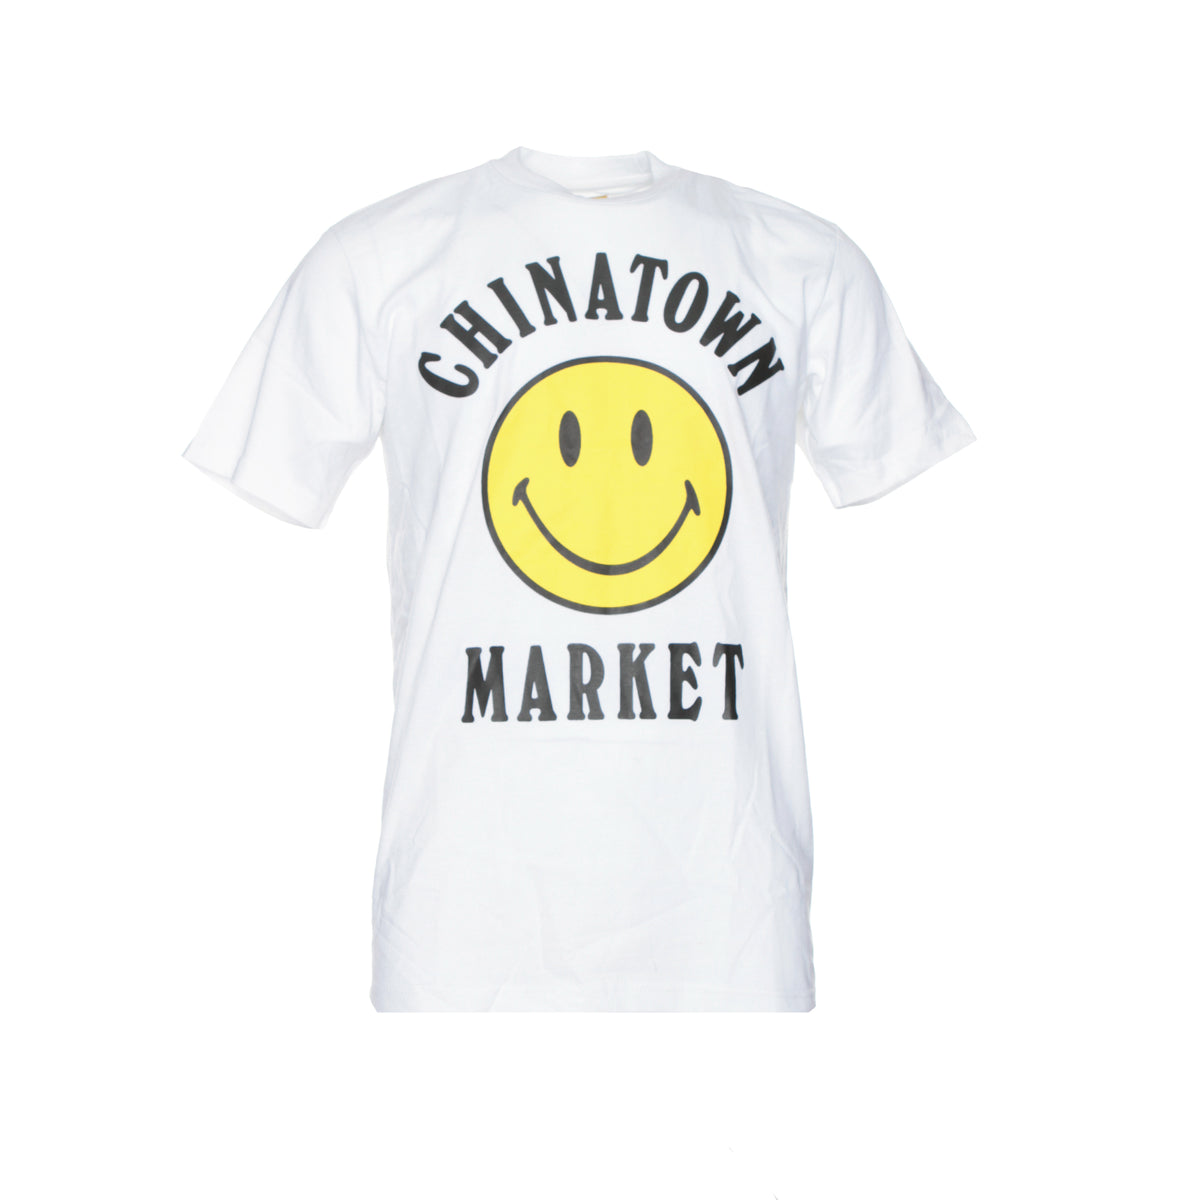 Chinatown Market Smiley Face Men's Tee White